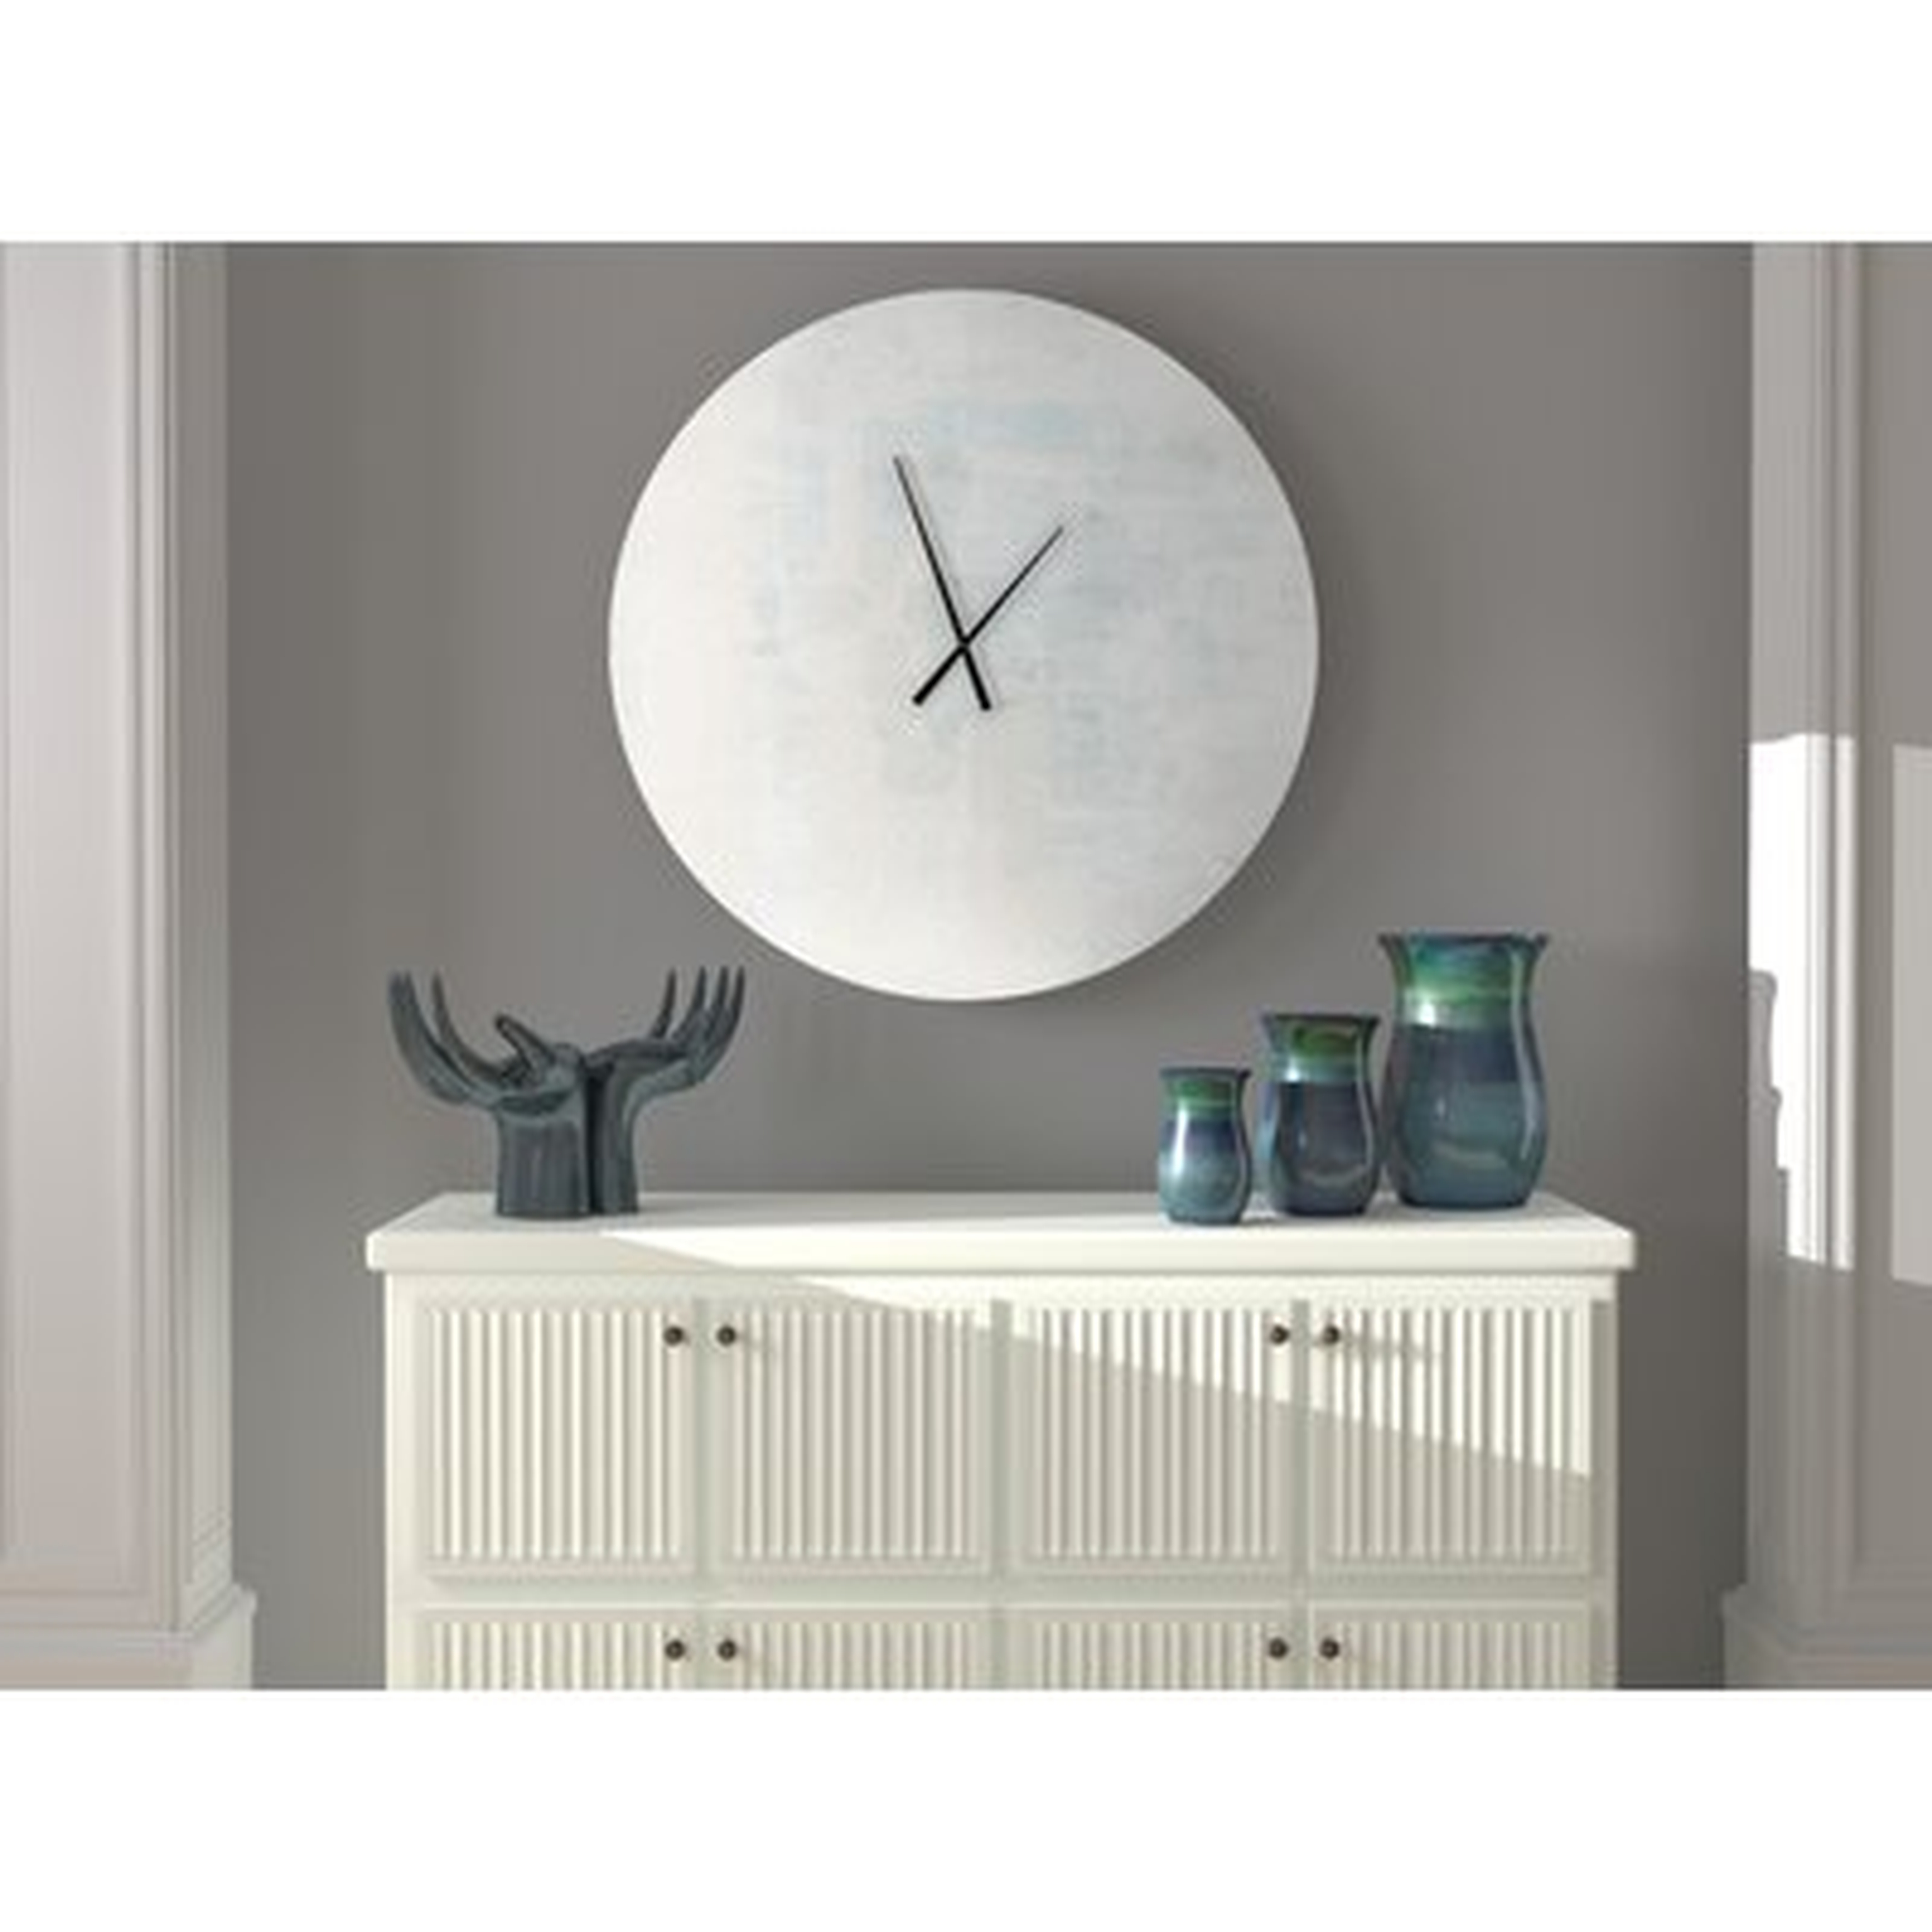 Norvell Wall Clock - Wayfair